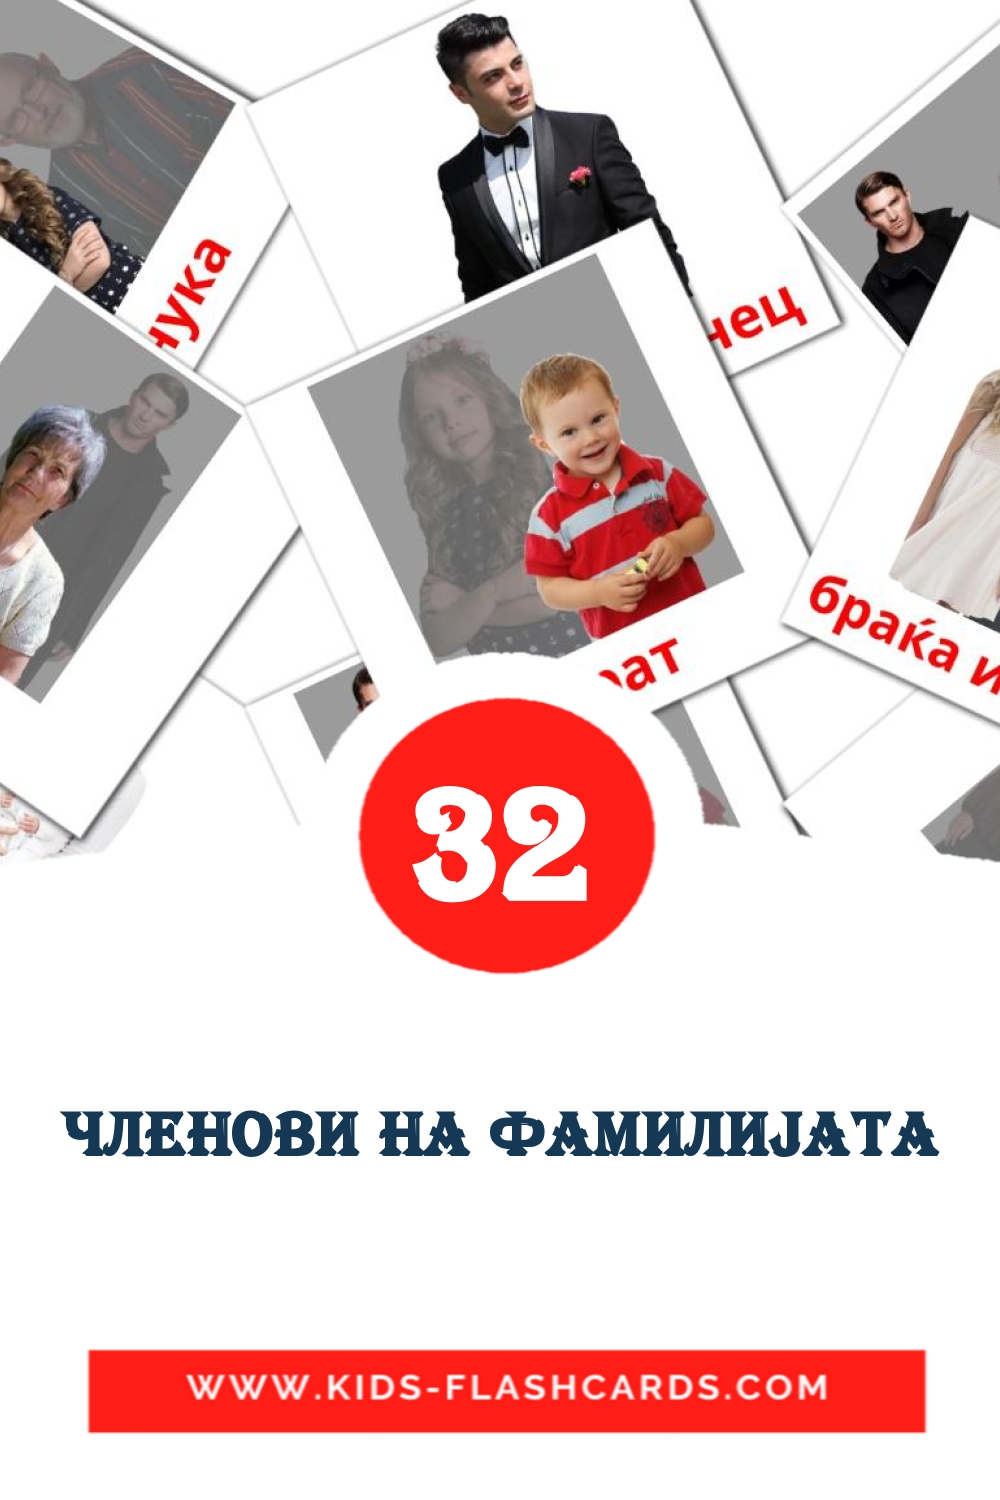 32 Членови на фамилиjата Bildkarten für den Kindergarten auf Mazedonisch